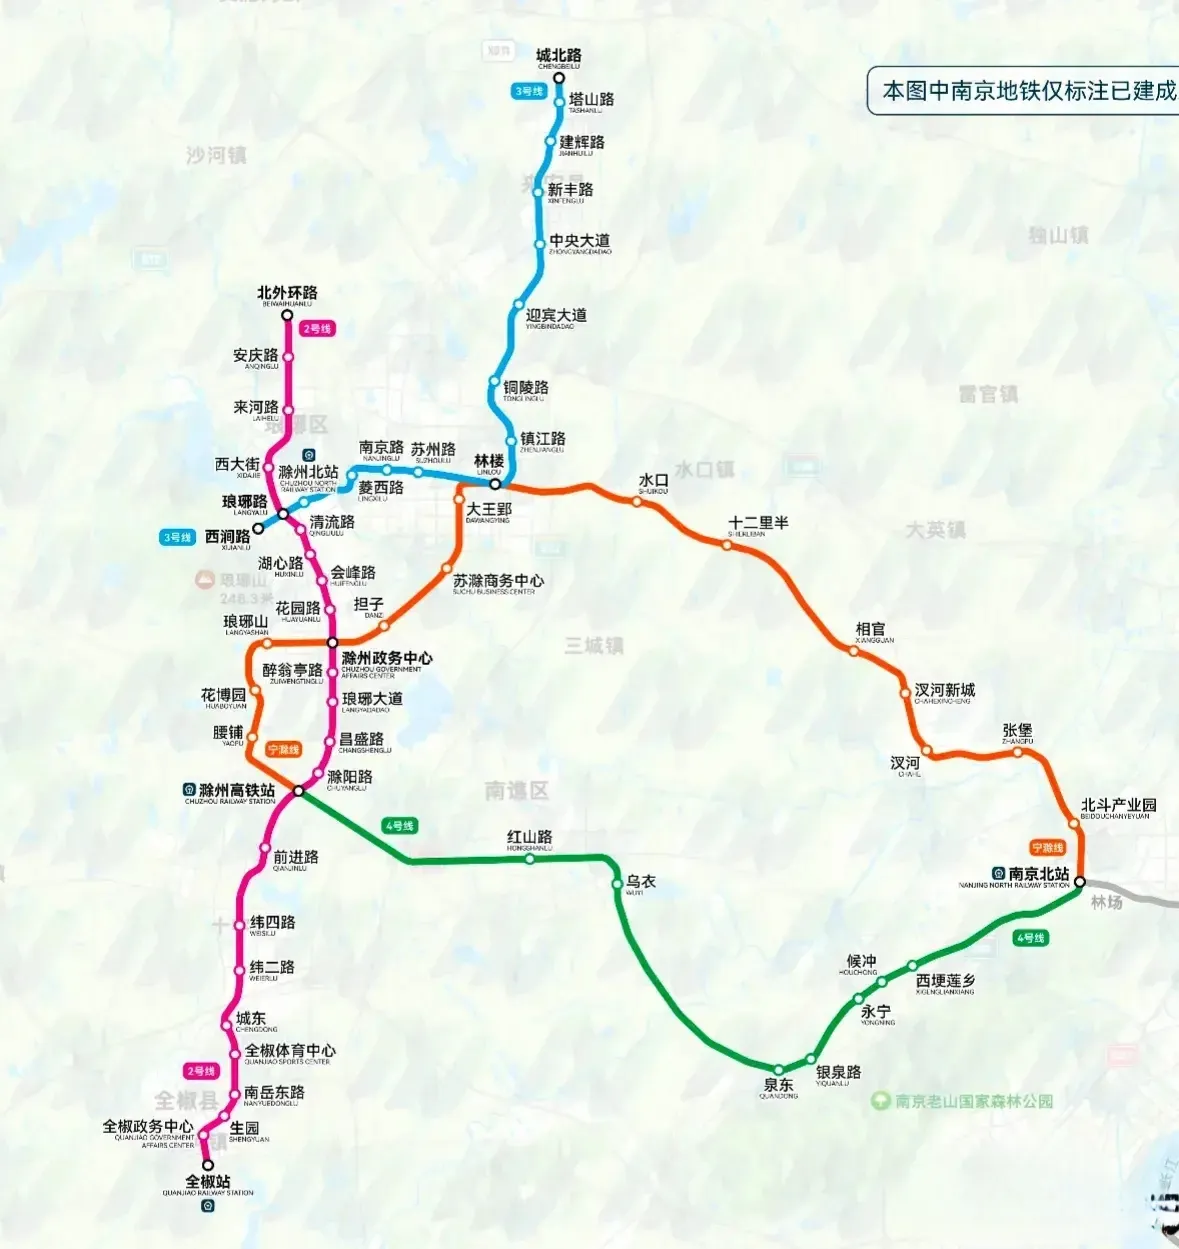 甚至还会形成地铁环线,虽然这是一个较为久远的规划,但至少说明滁州